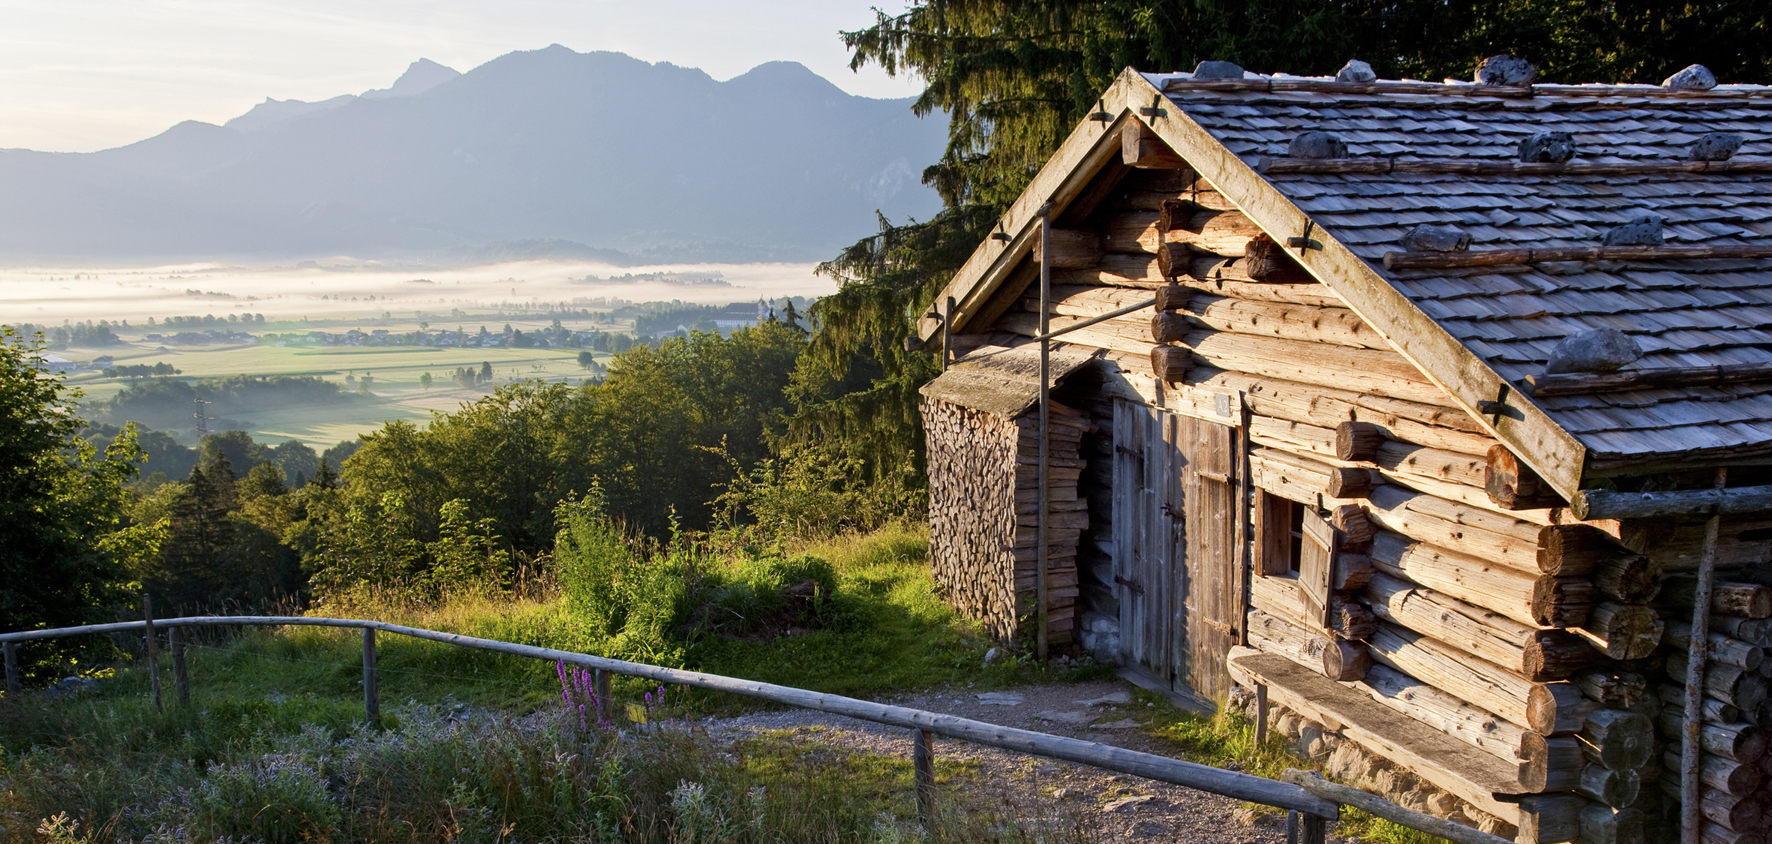 Almgebude von der Mordaualm (Lkr. Berchtesgadener Land). Foto: Christian Bck.